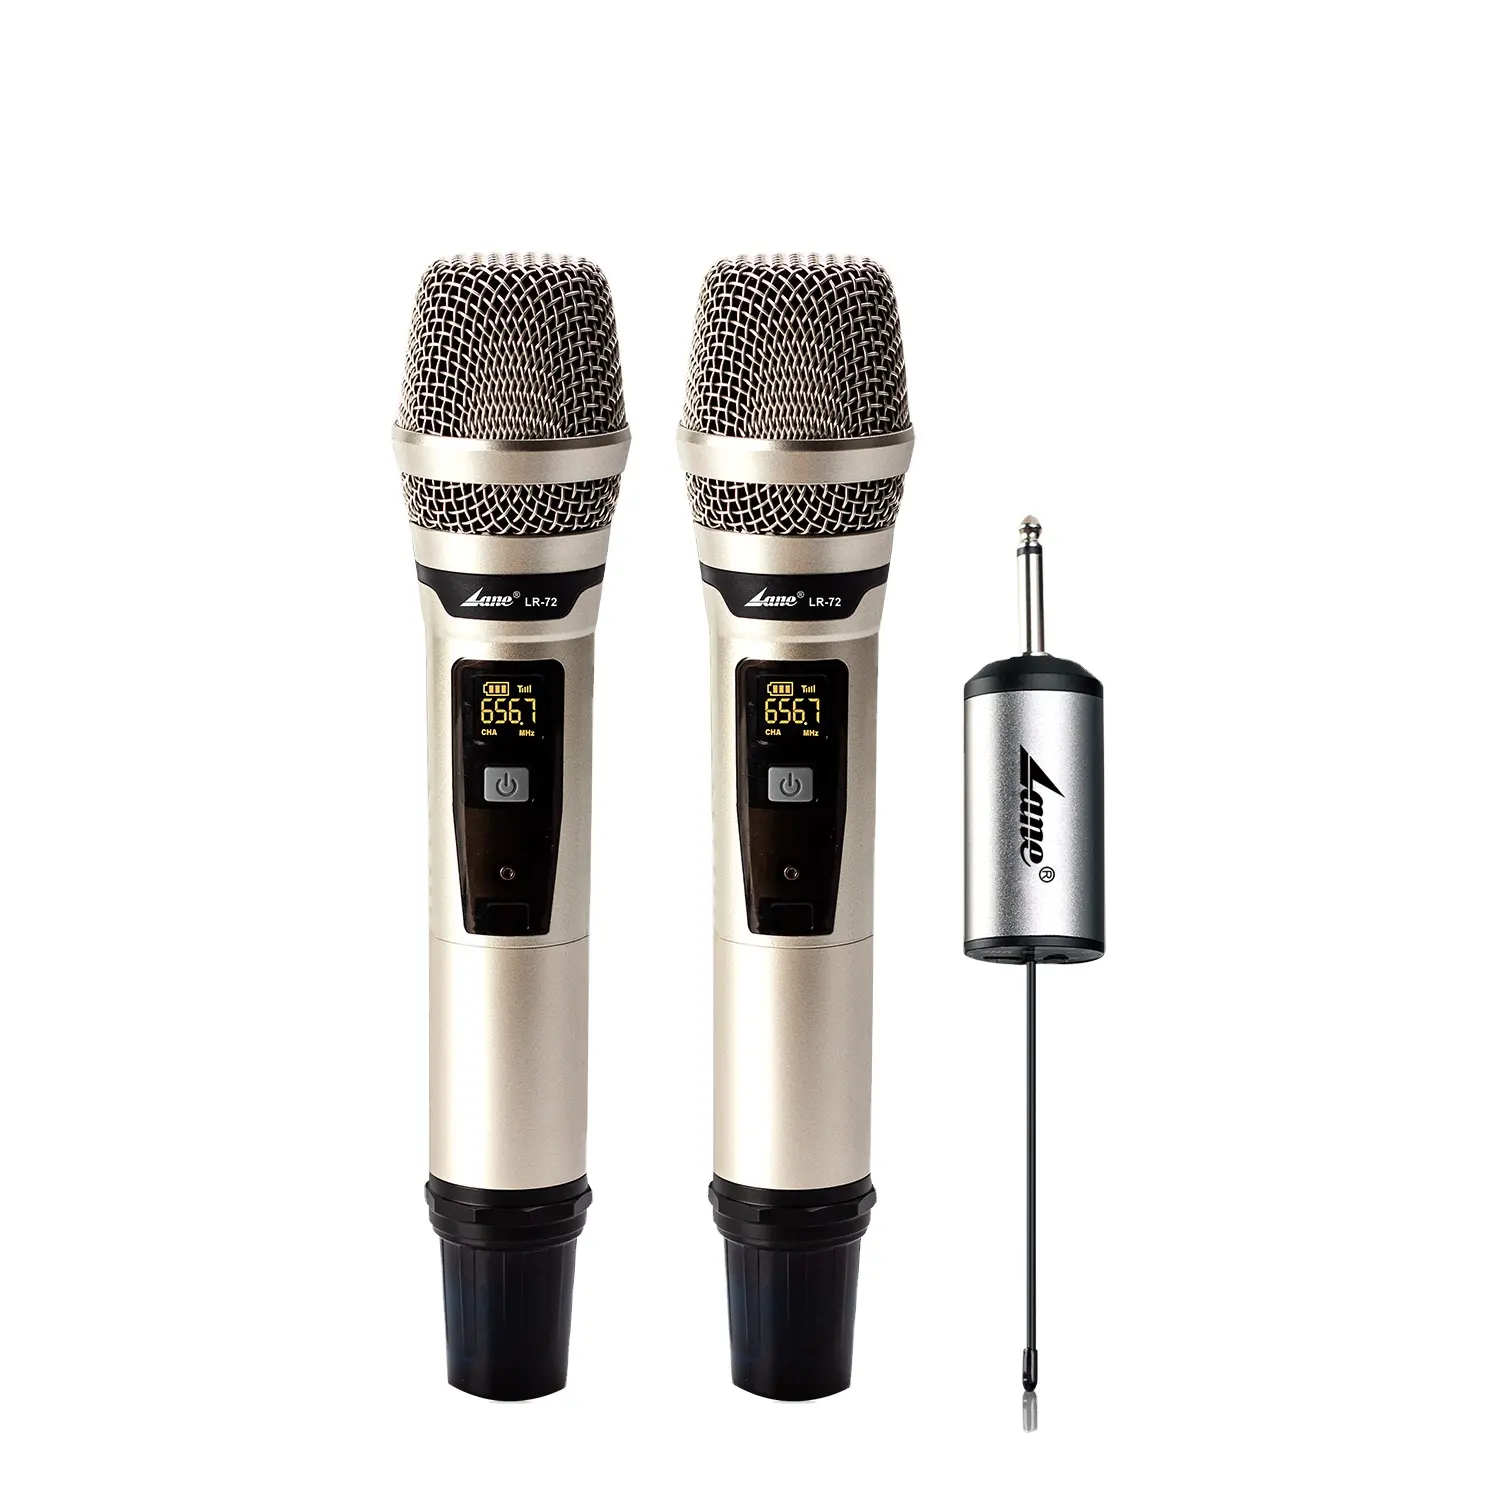 UHF el kablosuz mikrofon Lane gürültü iptal dinamik mikrofon LR-72 yeni toptan ürünler profesyonel 2 kanal